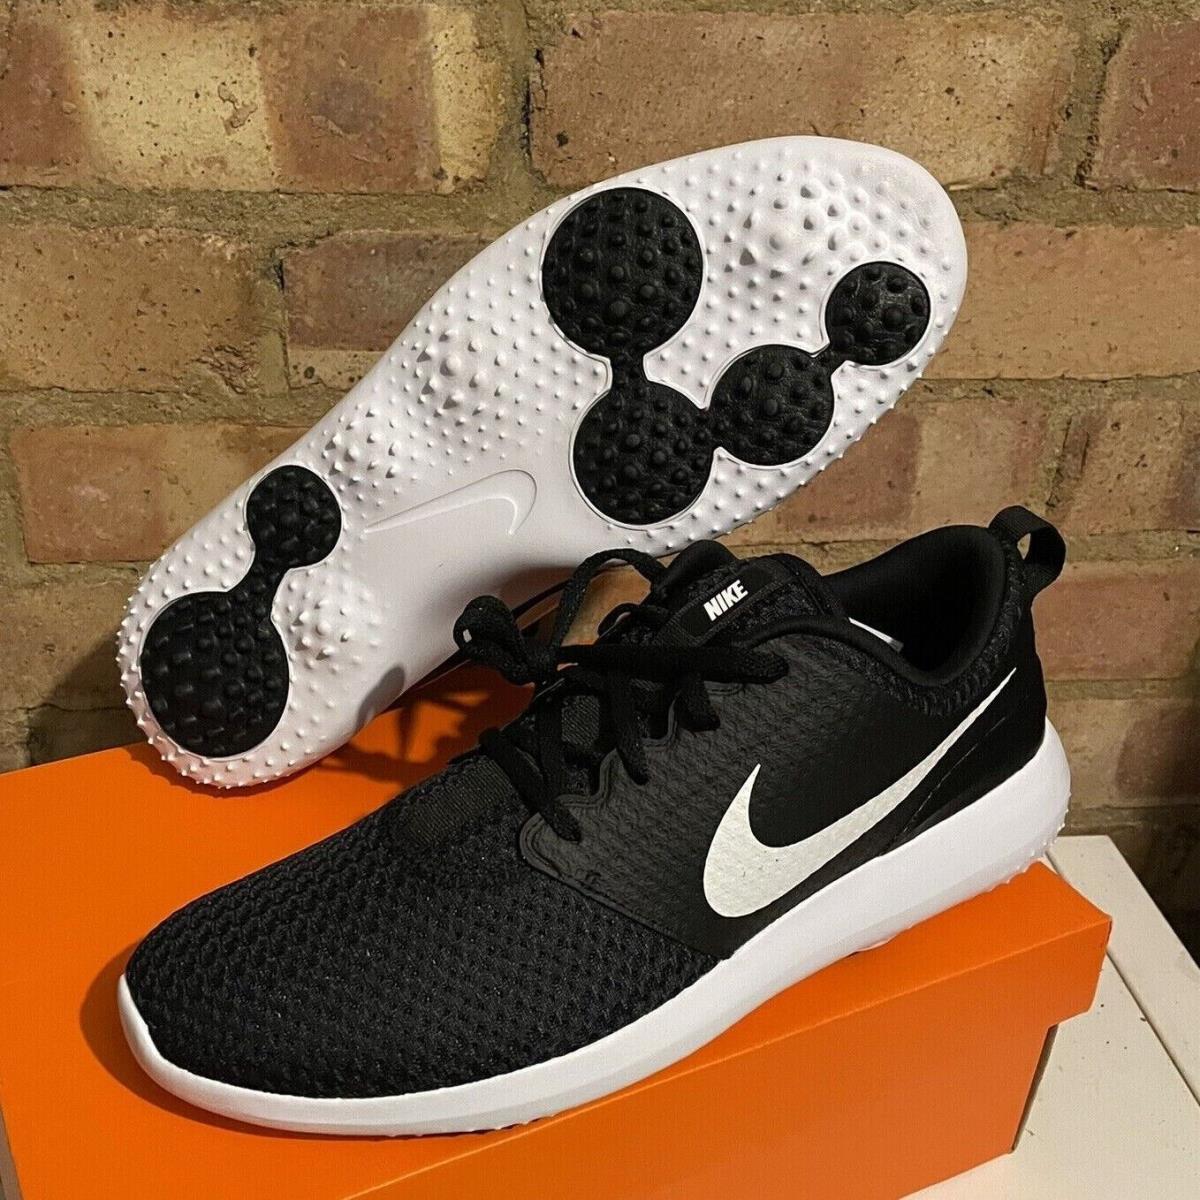 Nike Roshe G Golf Shoes Men s Sizes White Black Spikeless Golf CD6065-001